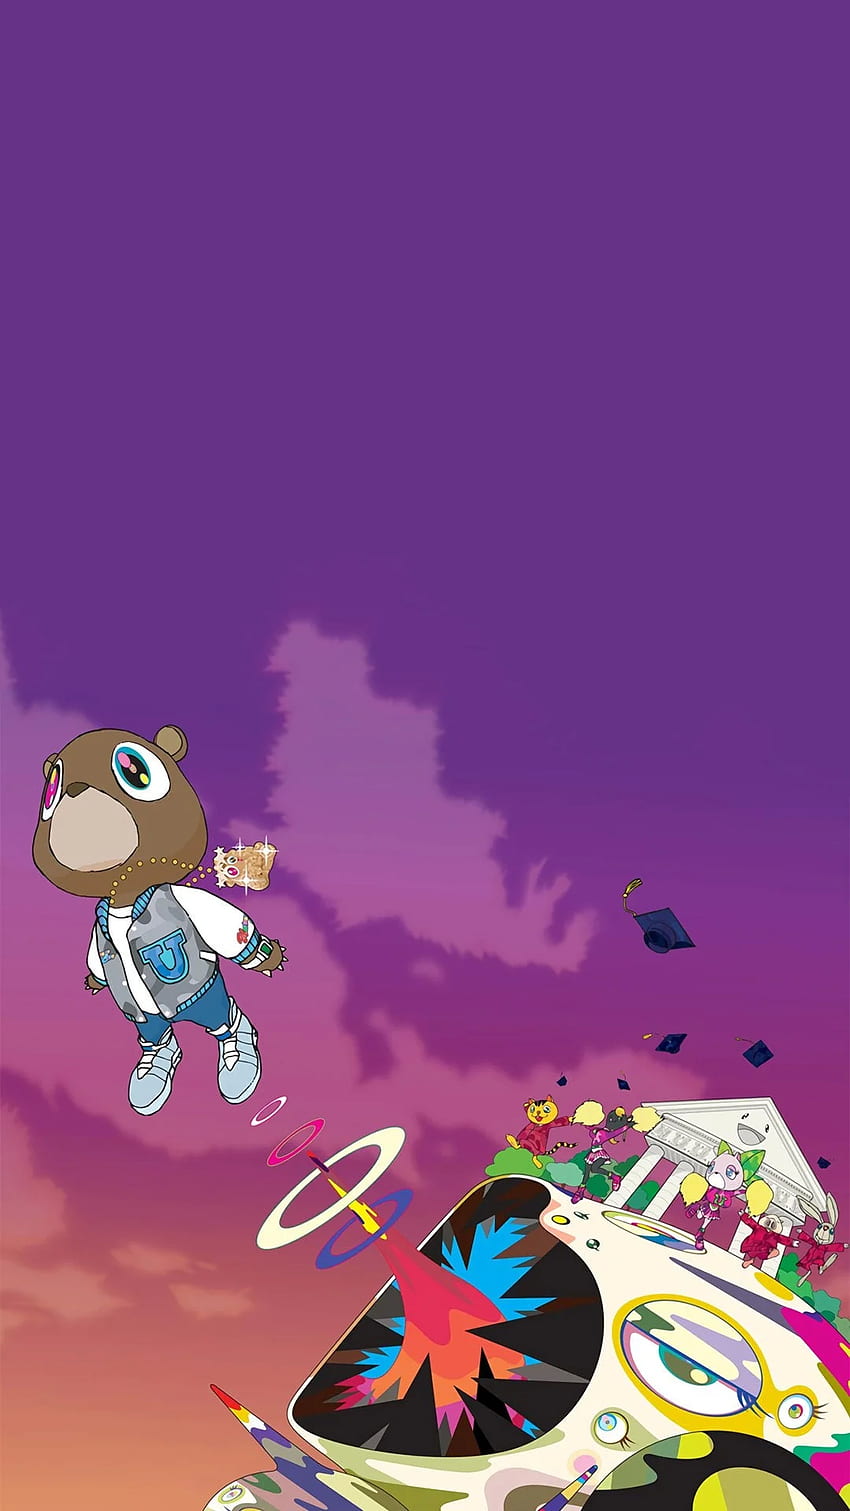 나는 당신의 전화를 위해 이 졸업을 만들었습니다! : R Kanye, Kanye West 졸업 iPhone HD 전화 배경 화면